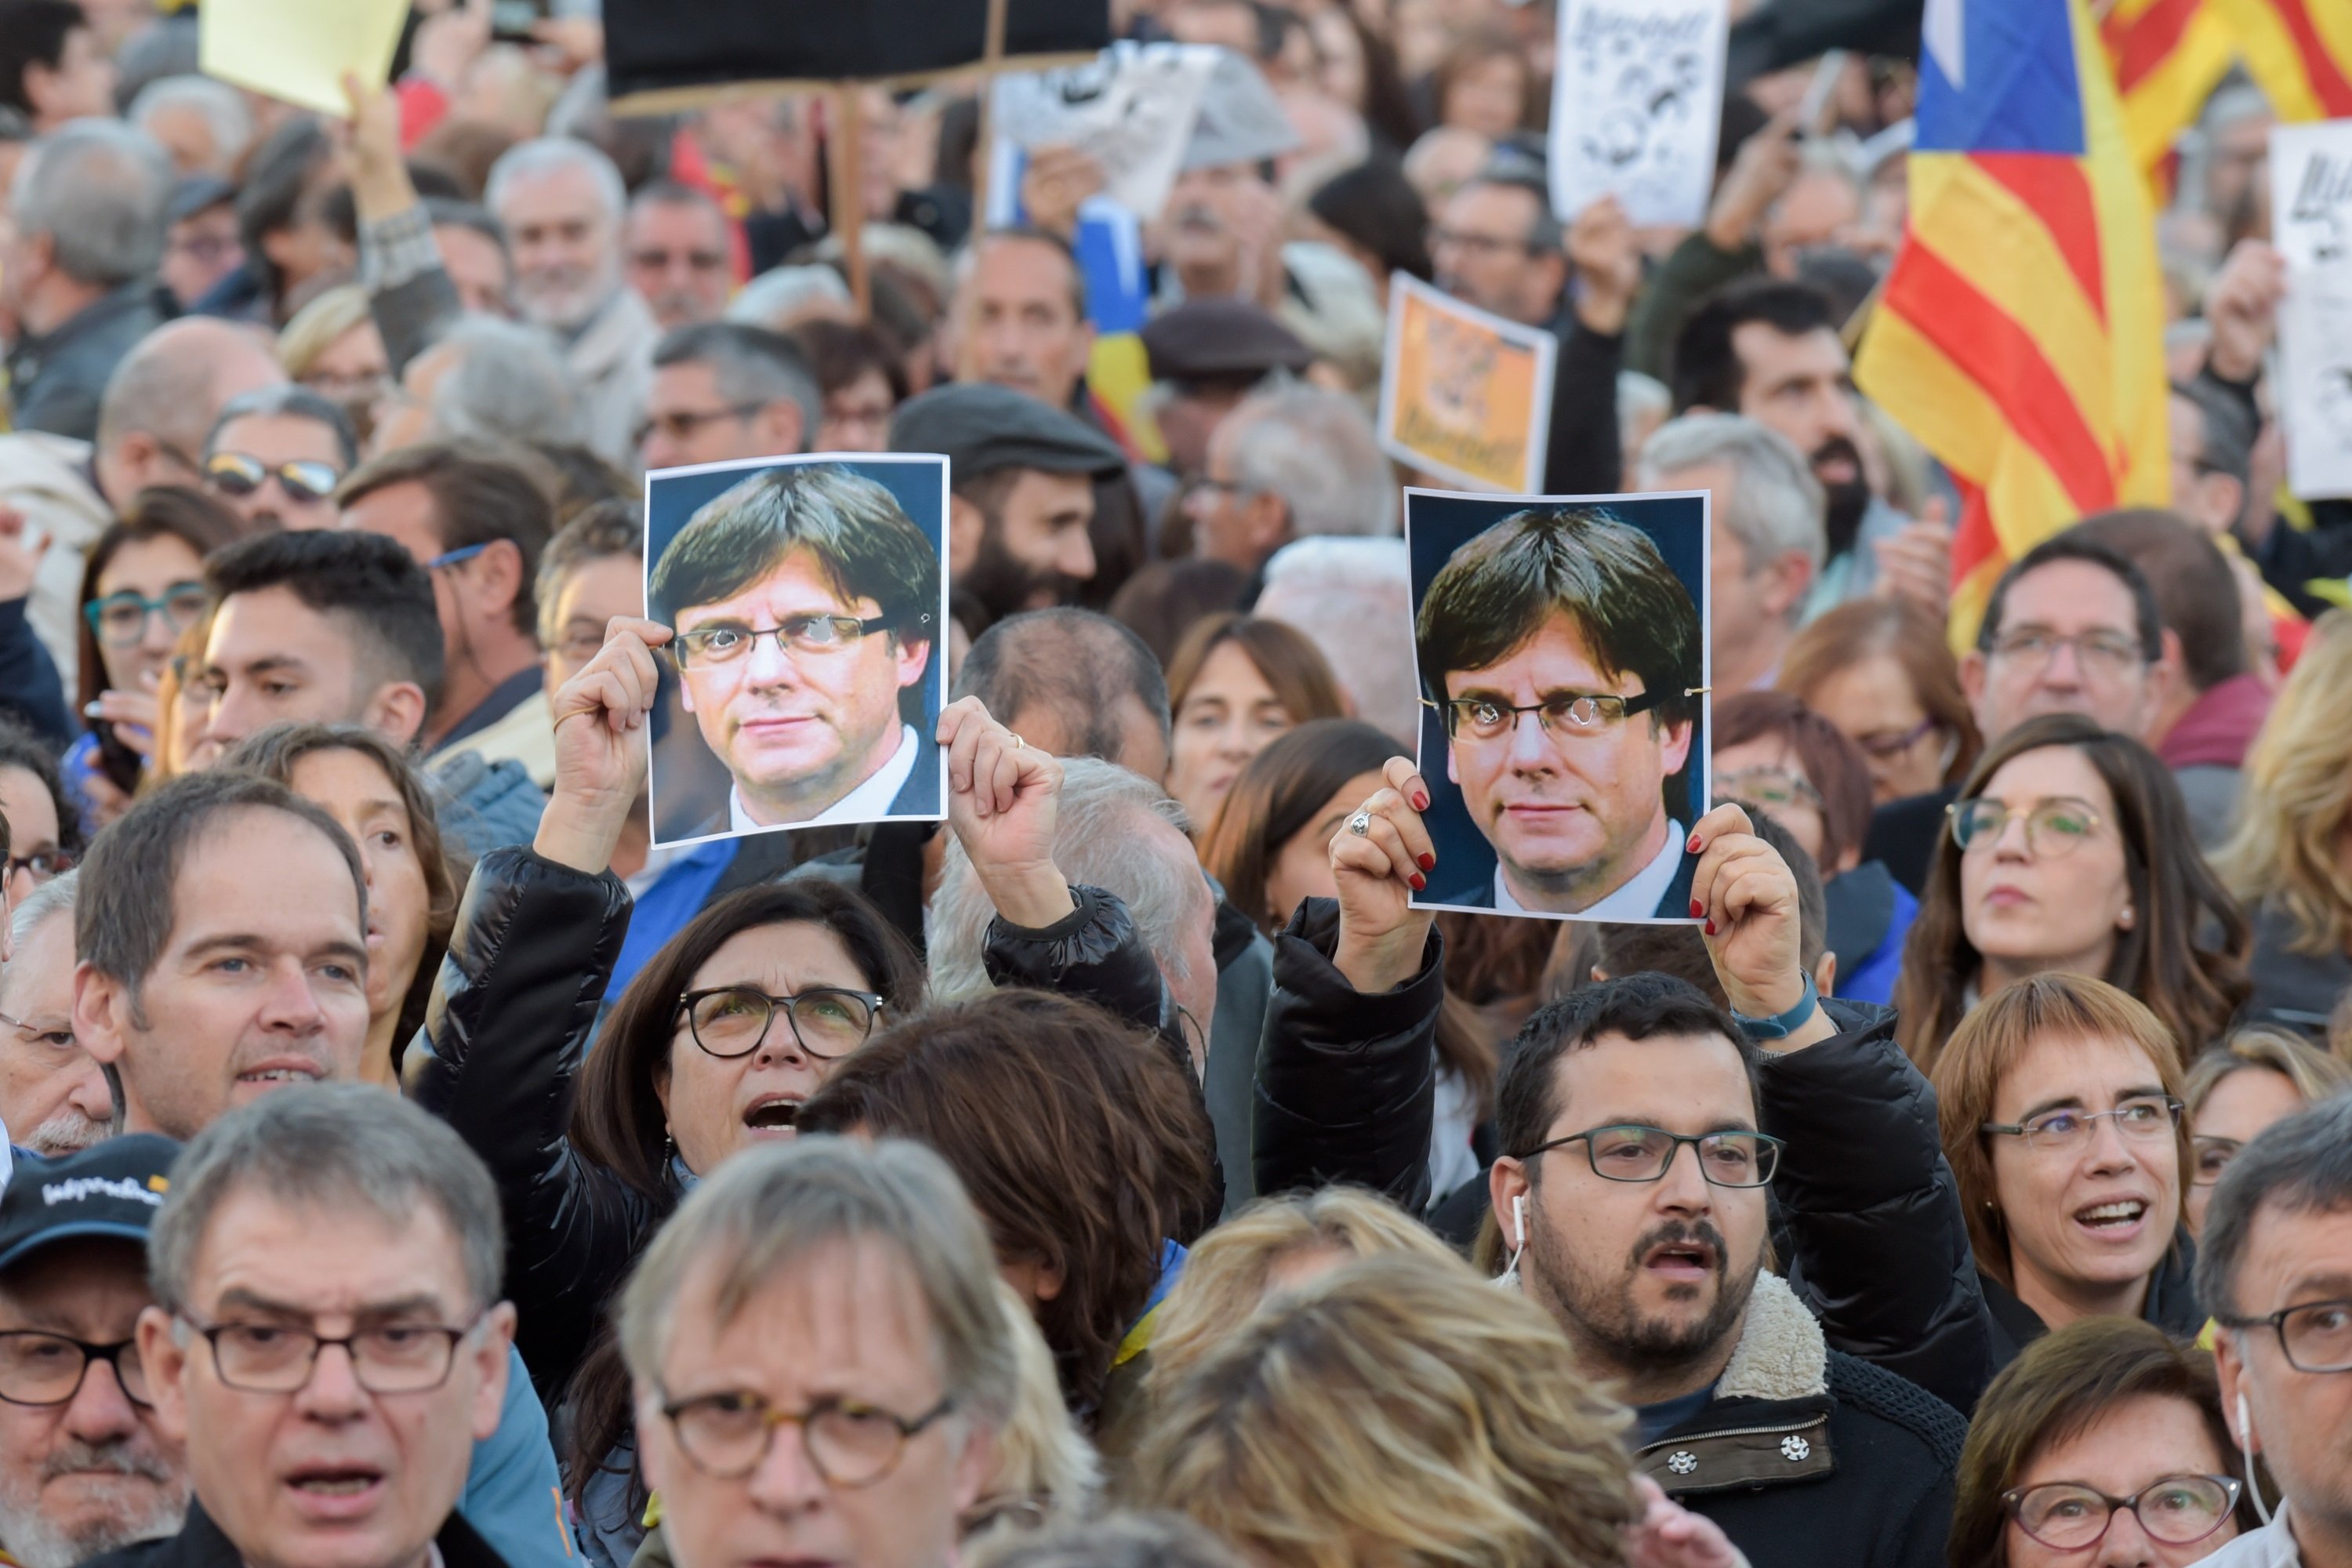 Missatges de Puigdemont i els exiliats: "Tenim dret a ser un país nou"